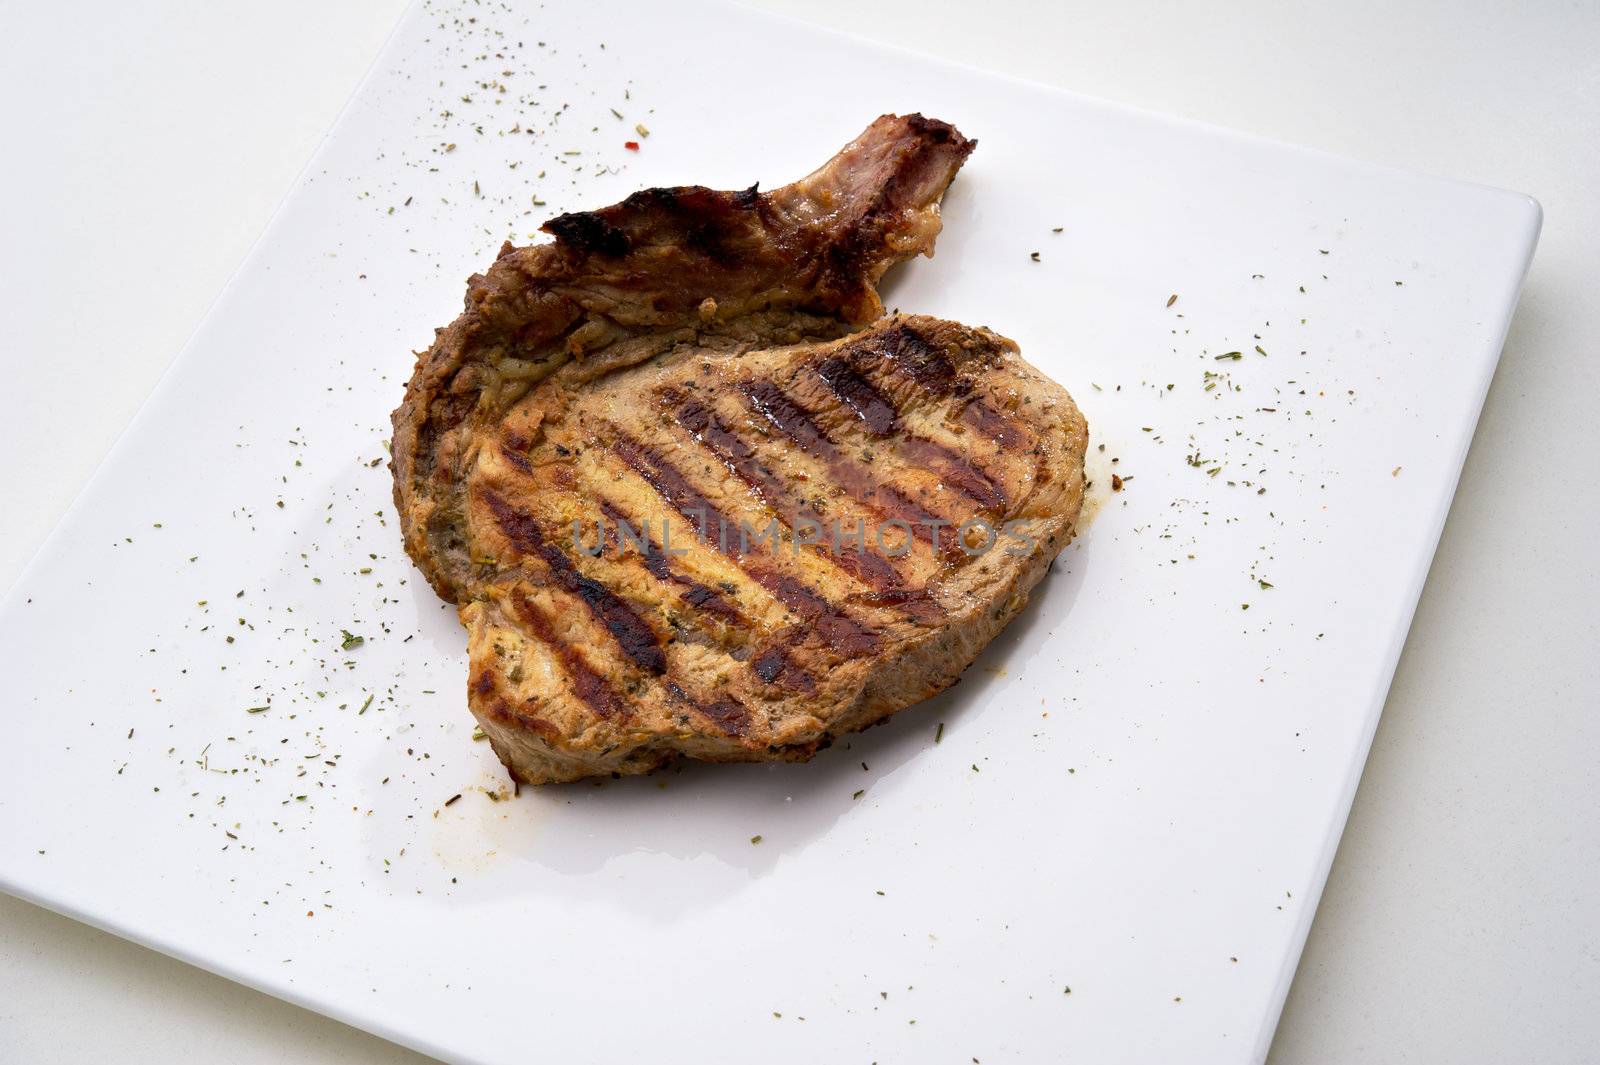 Chicken Steak served on white plate